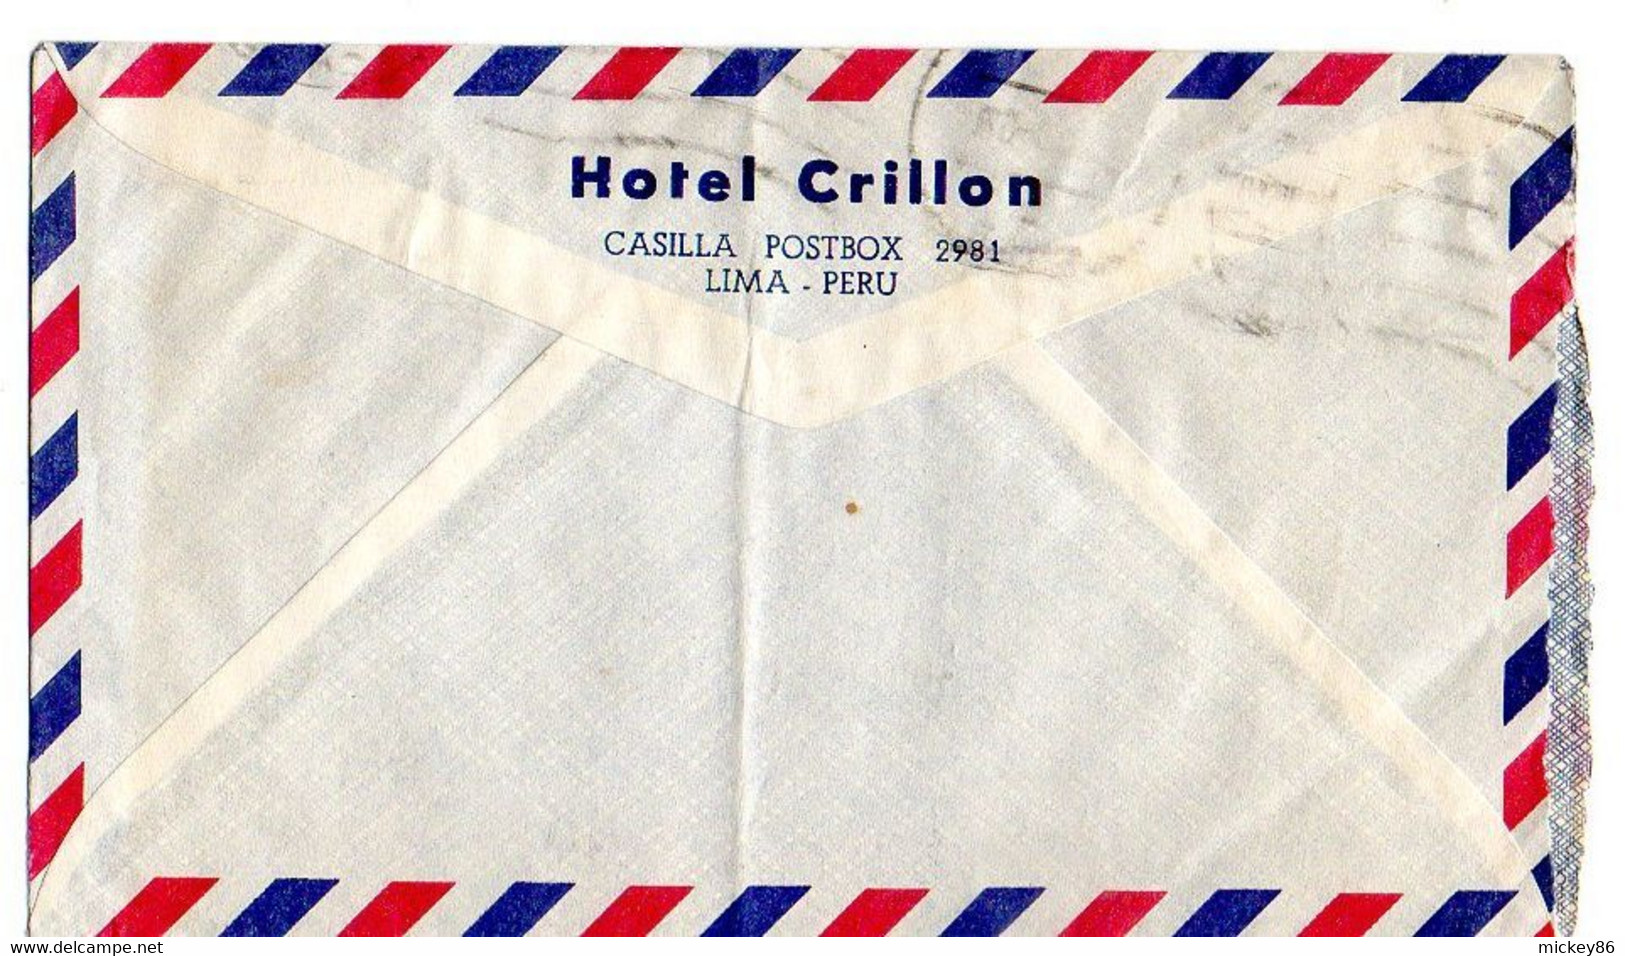 CHILI--1960--lettre  Pour NANTERRE-92 (France)- Timbres (avion ) Sur Lettre...cachet - Chile